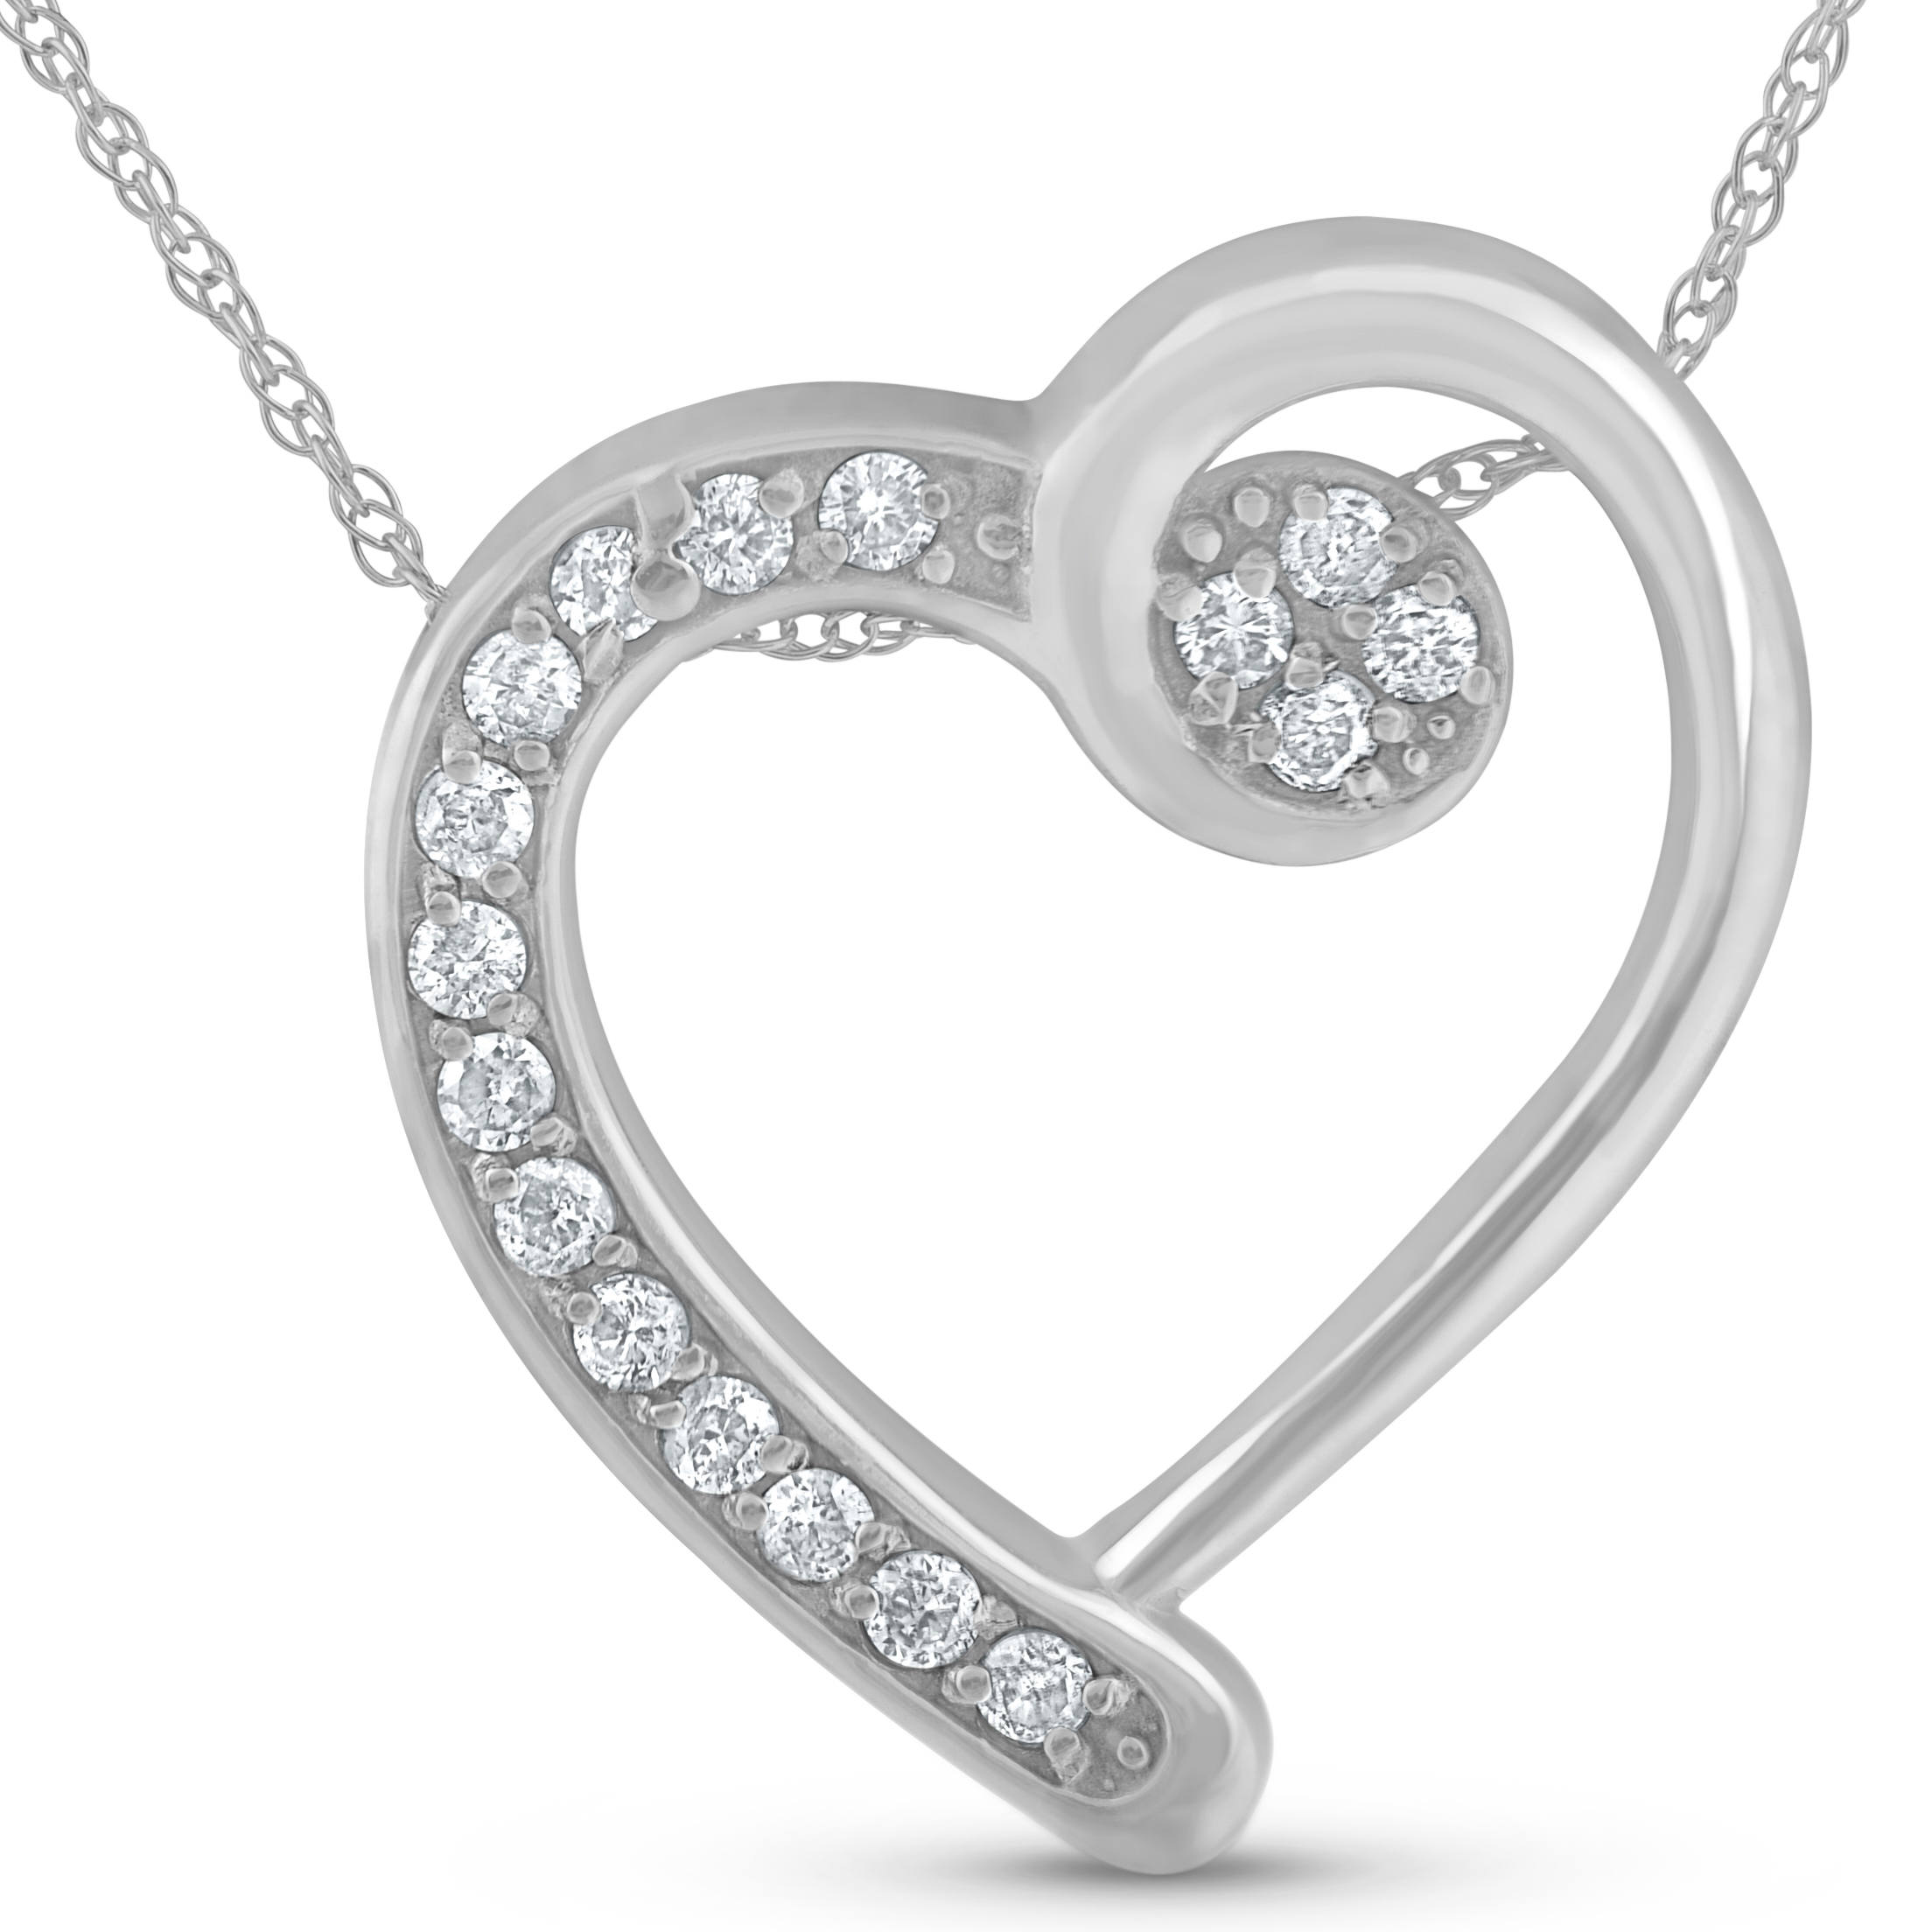 1/4ct Diamond Heart Pendant 14k White Gold | eBay